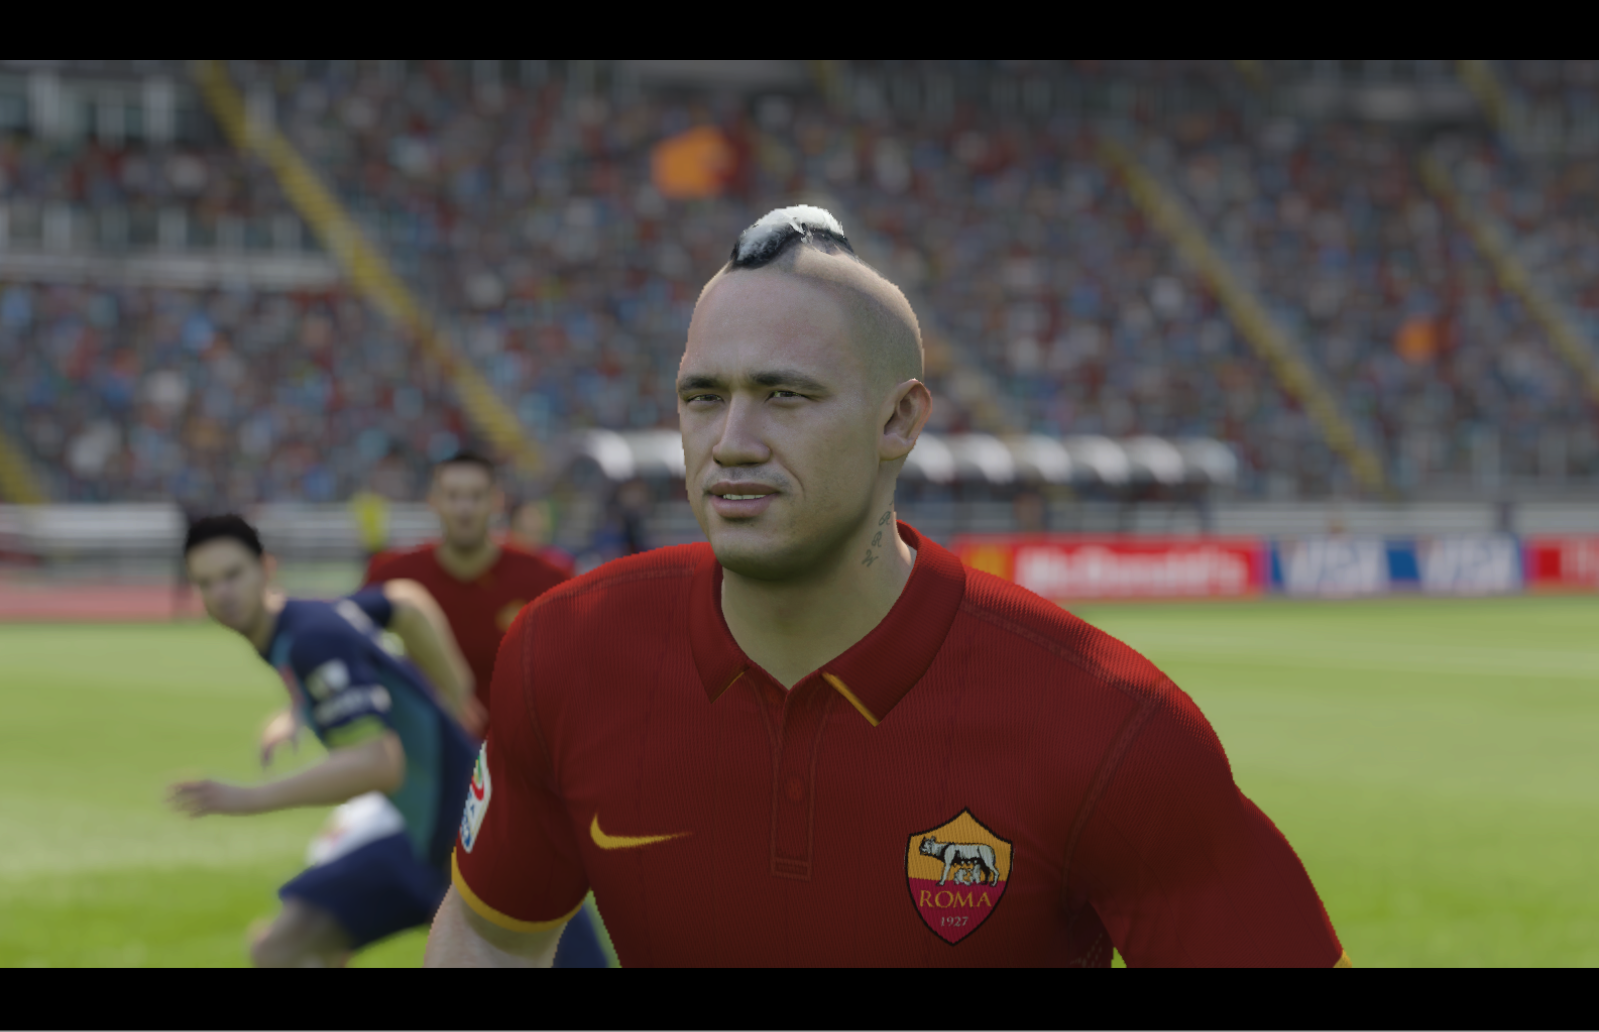 Vier spelers uit Benelux krijgen nieuwe faces in FIFA 17